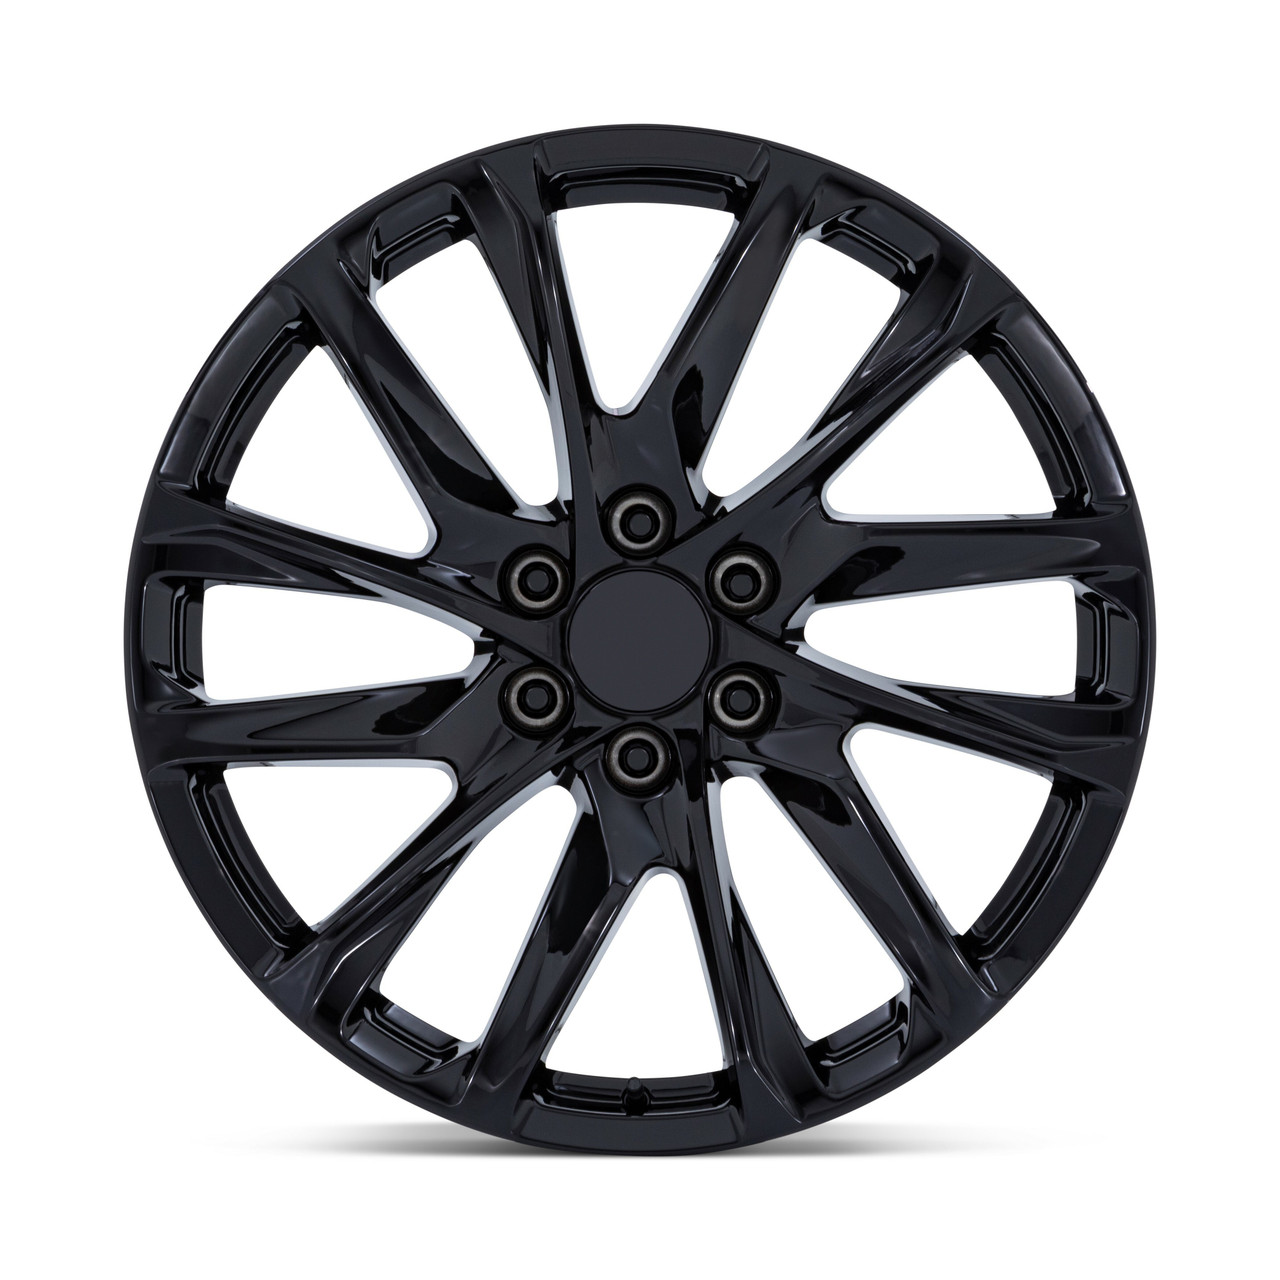 Set 4 Performance Replicas PR213 22x9 6x5.5 Gloss Black Wheels 22" 28mm Rims